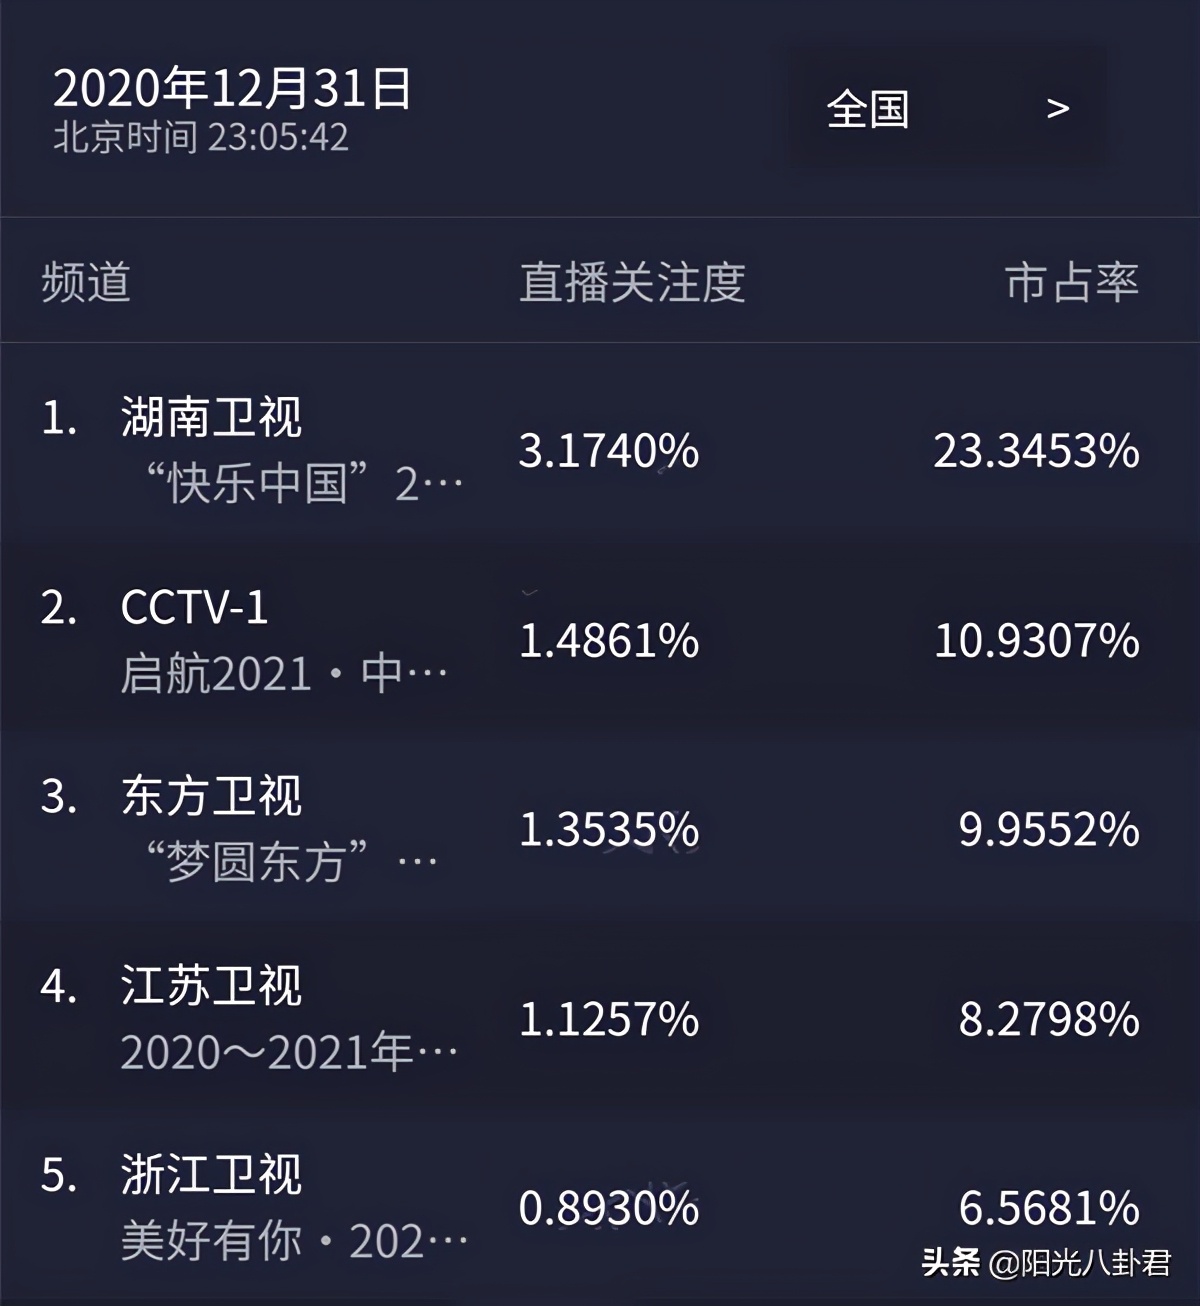 跨年晚会收视率对比：湖南台超越央视，浙江台垫底，北京台未上榜